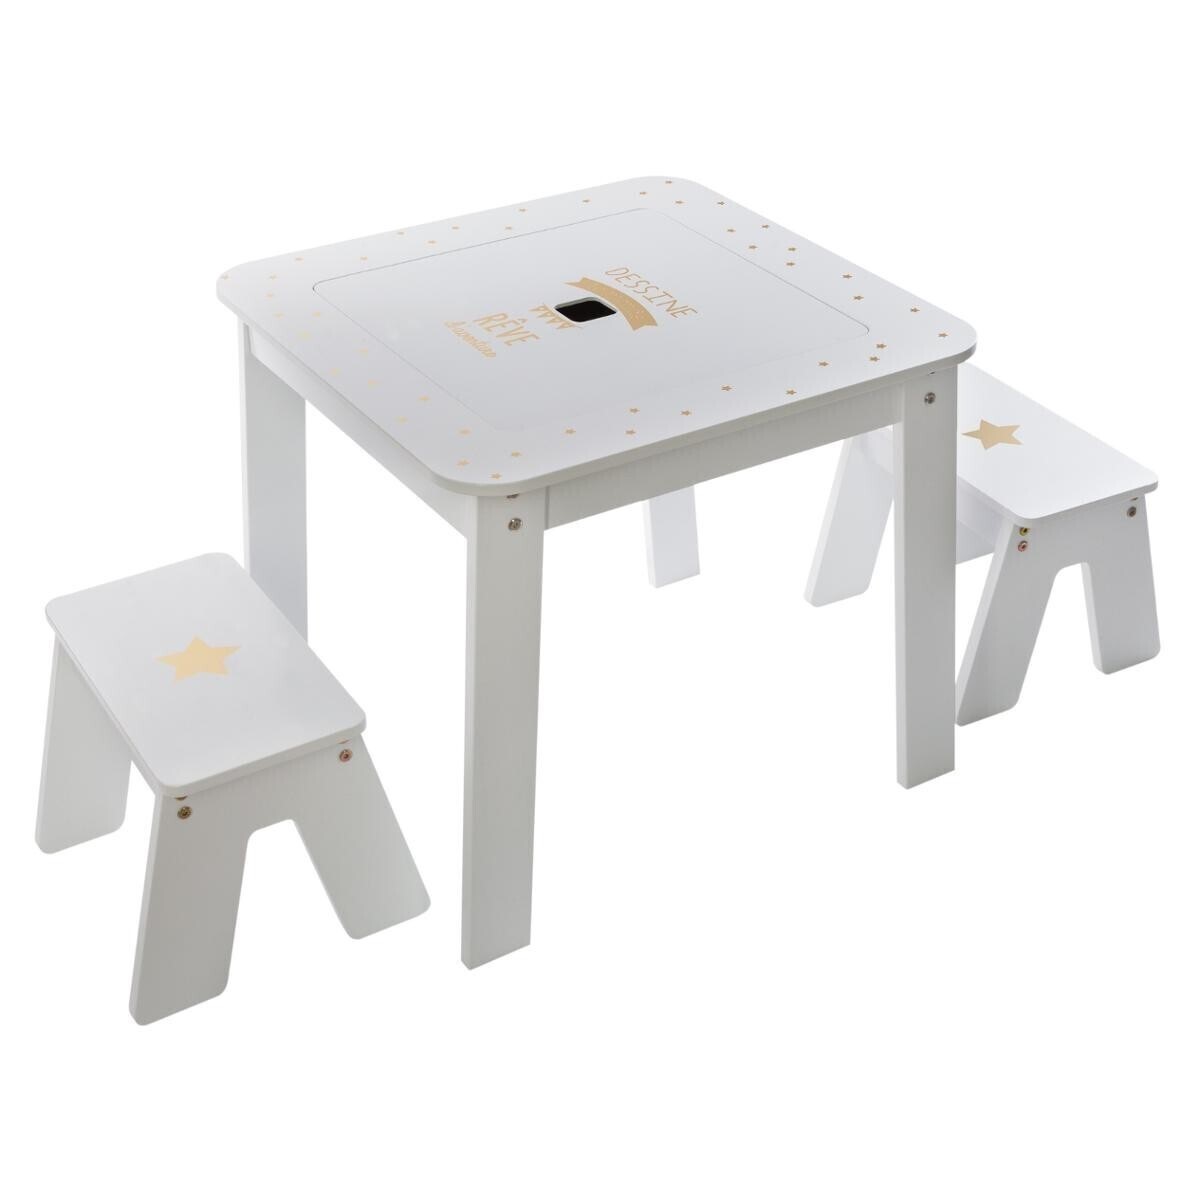 Møbelsæt bord med to taburetter, hvid/guld